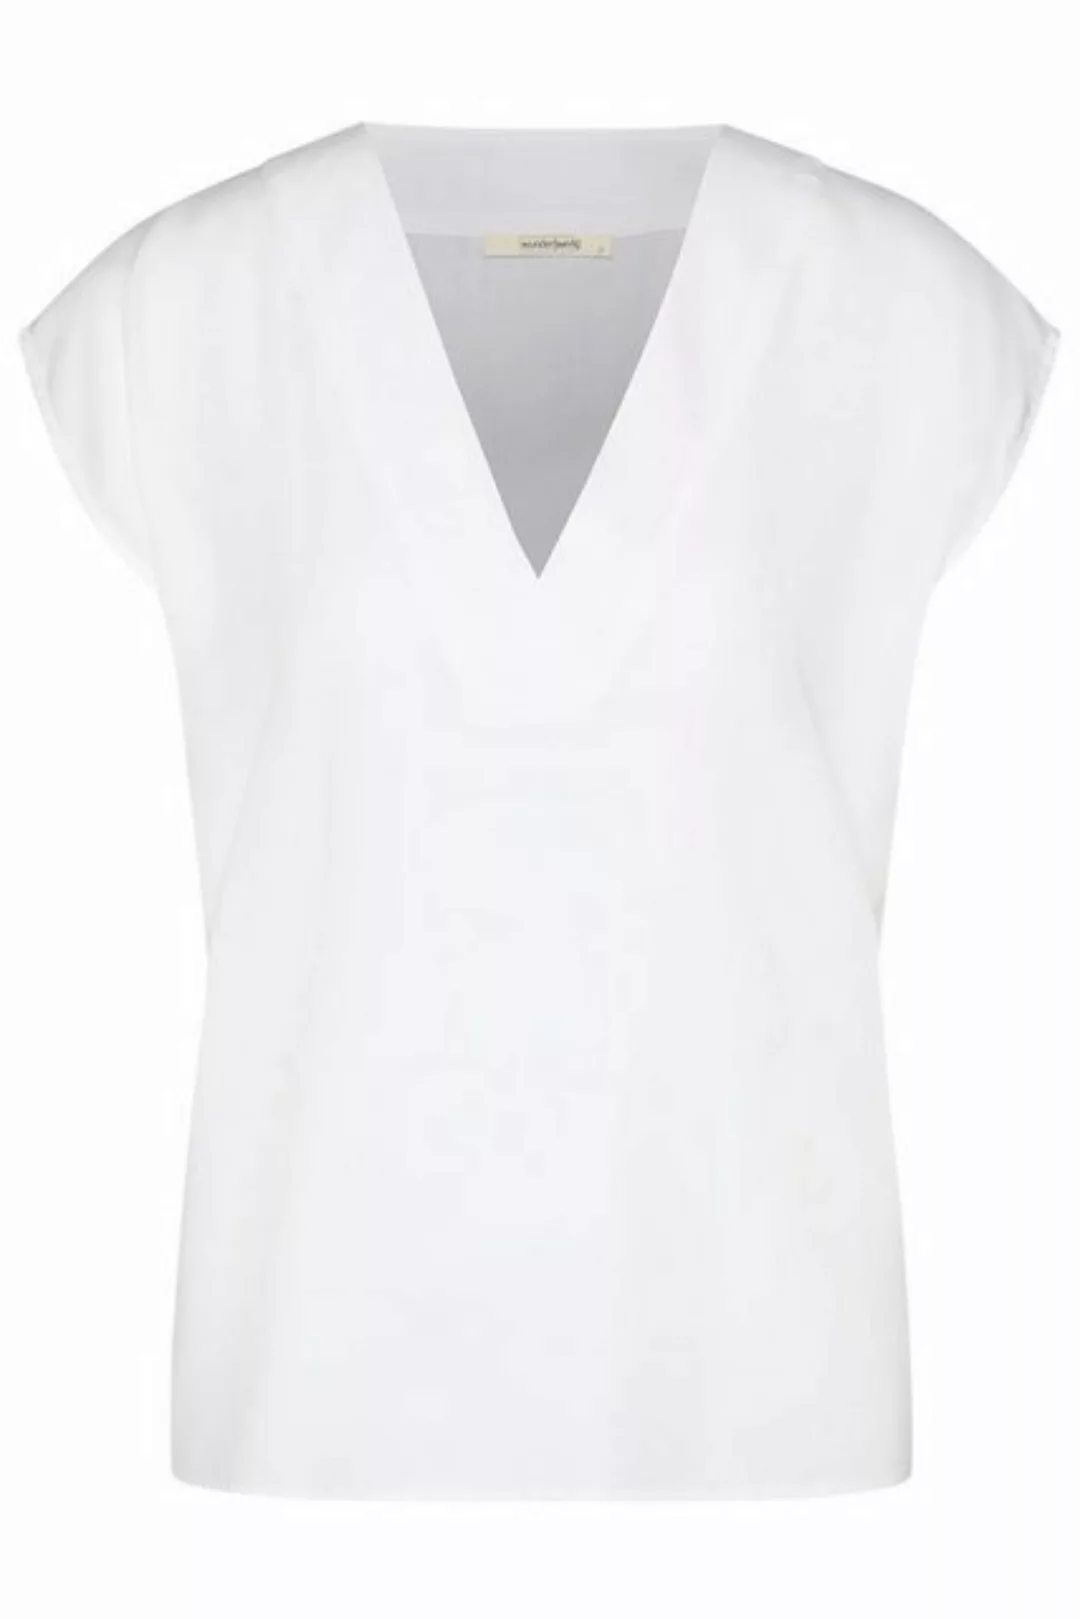 wunderwerk Shirtbluse Tunic blouse 1/2 TENCEL günstig online kaufen